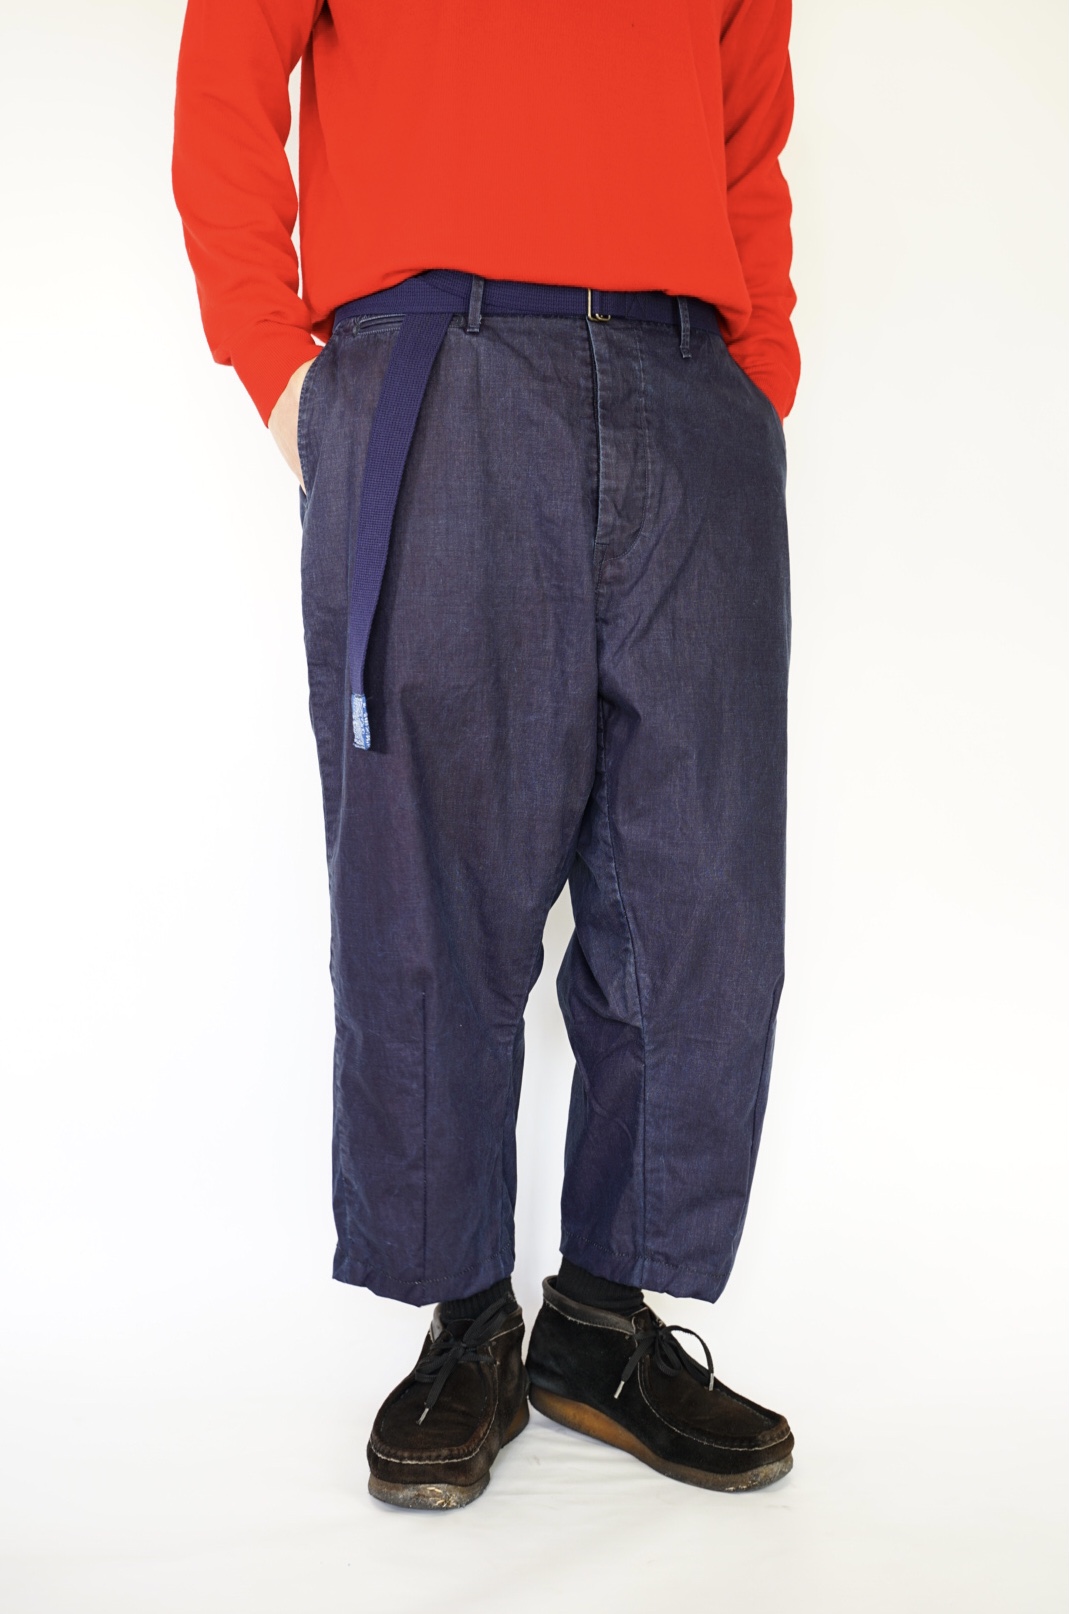 送料無料 イージーパンツ ワイドパンツ トラウザー インディゴ オールシーズン design 1 Re 大幅にプライスダウン pants マーケティング ベルト付き